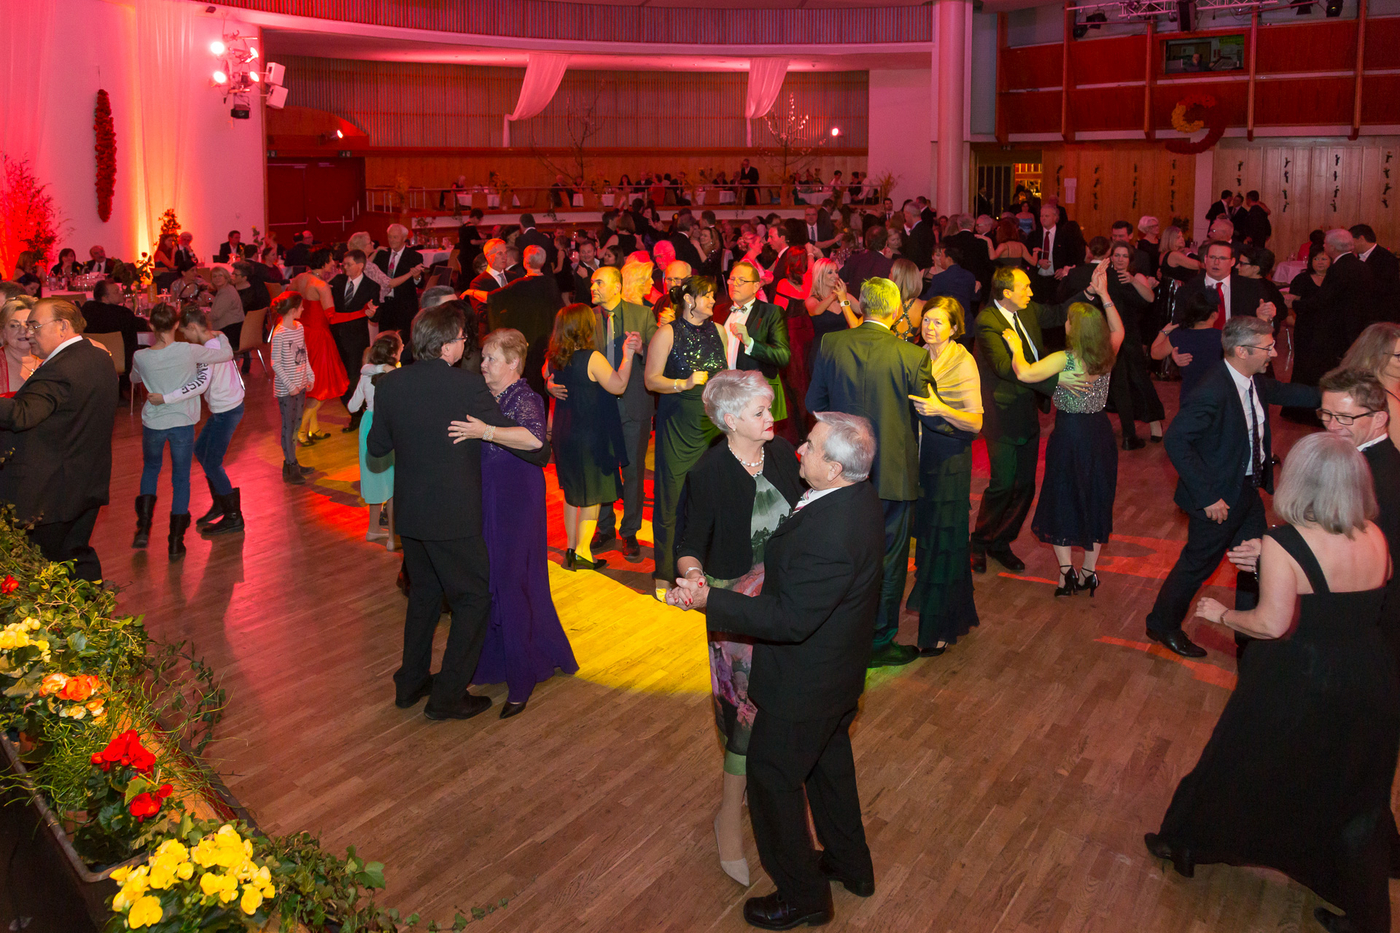 Tanzfläche der Kürnberghalle mit einigen tanzenden Paaren